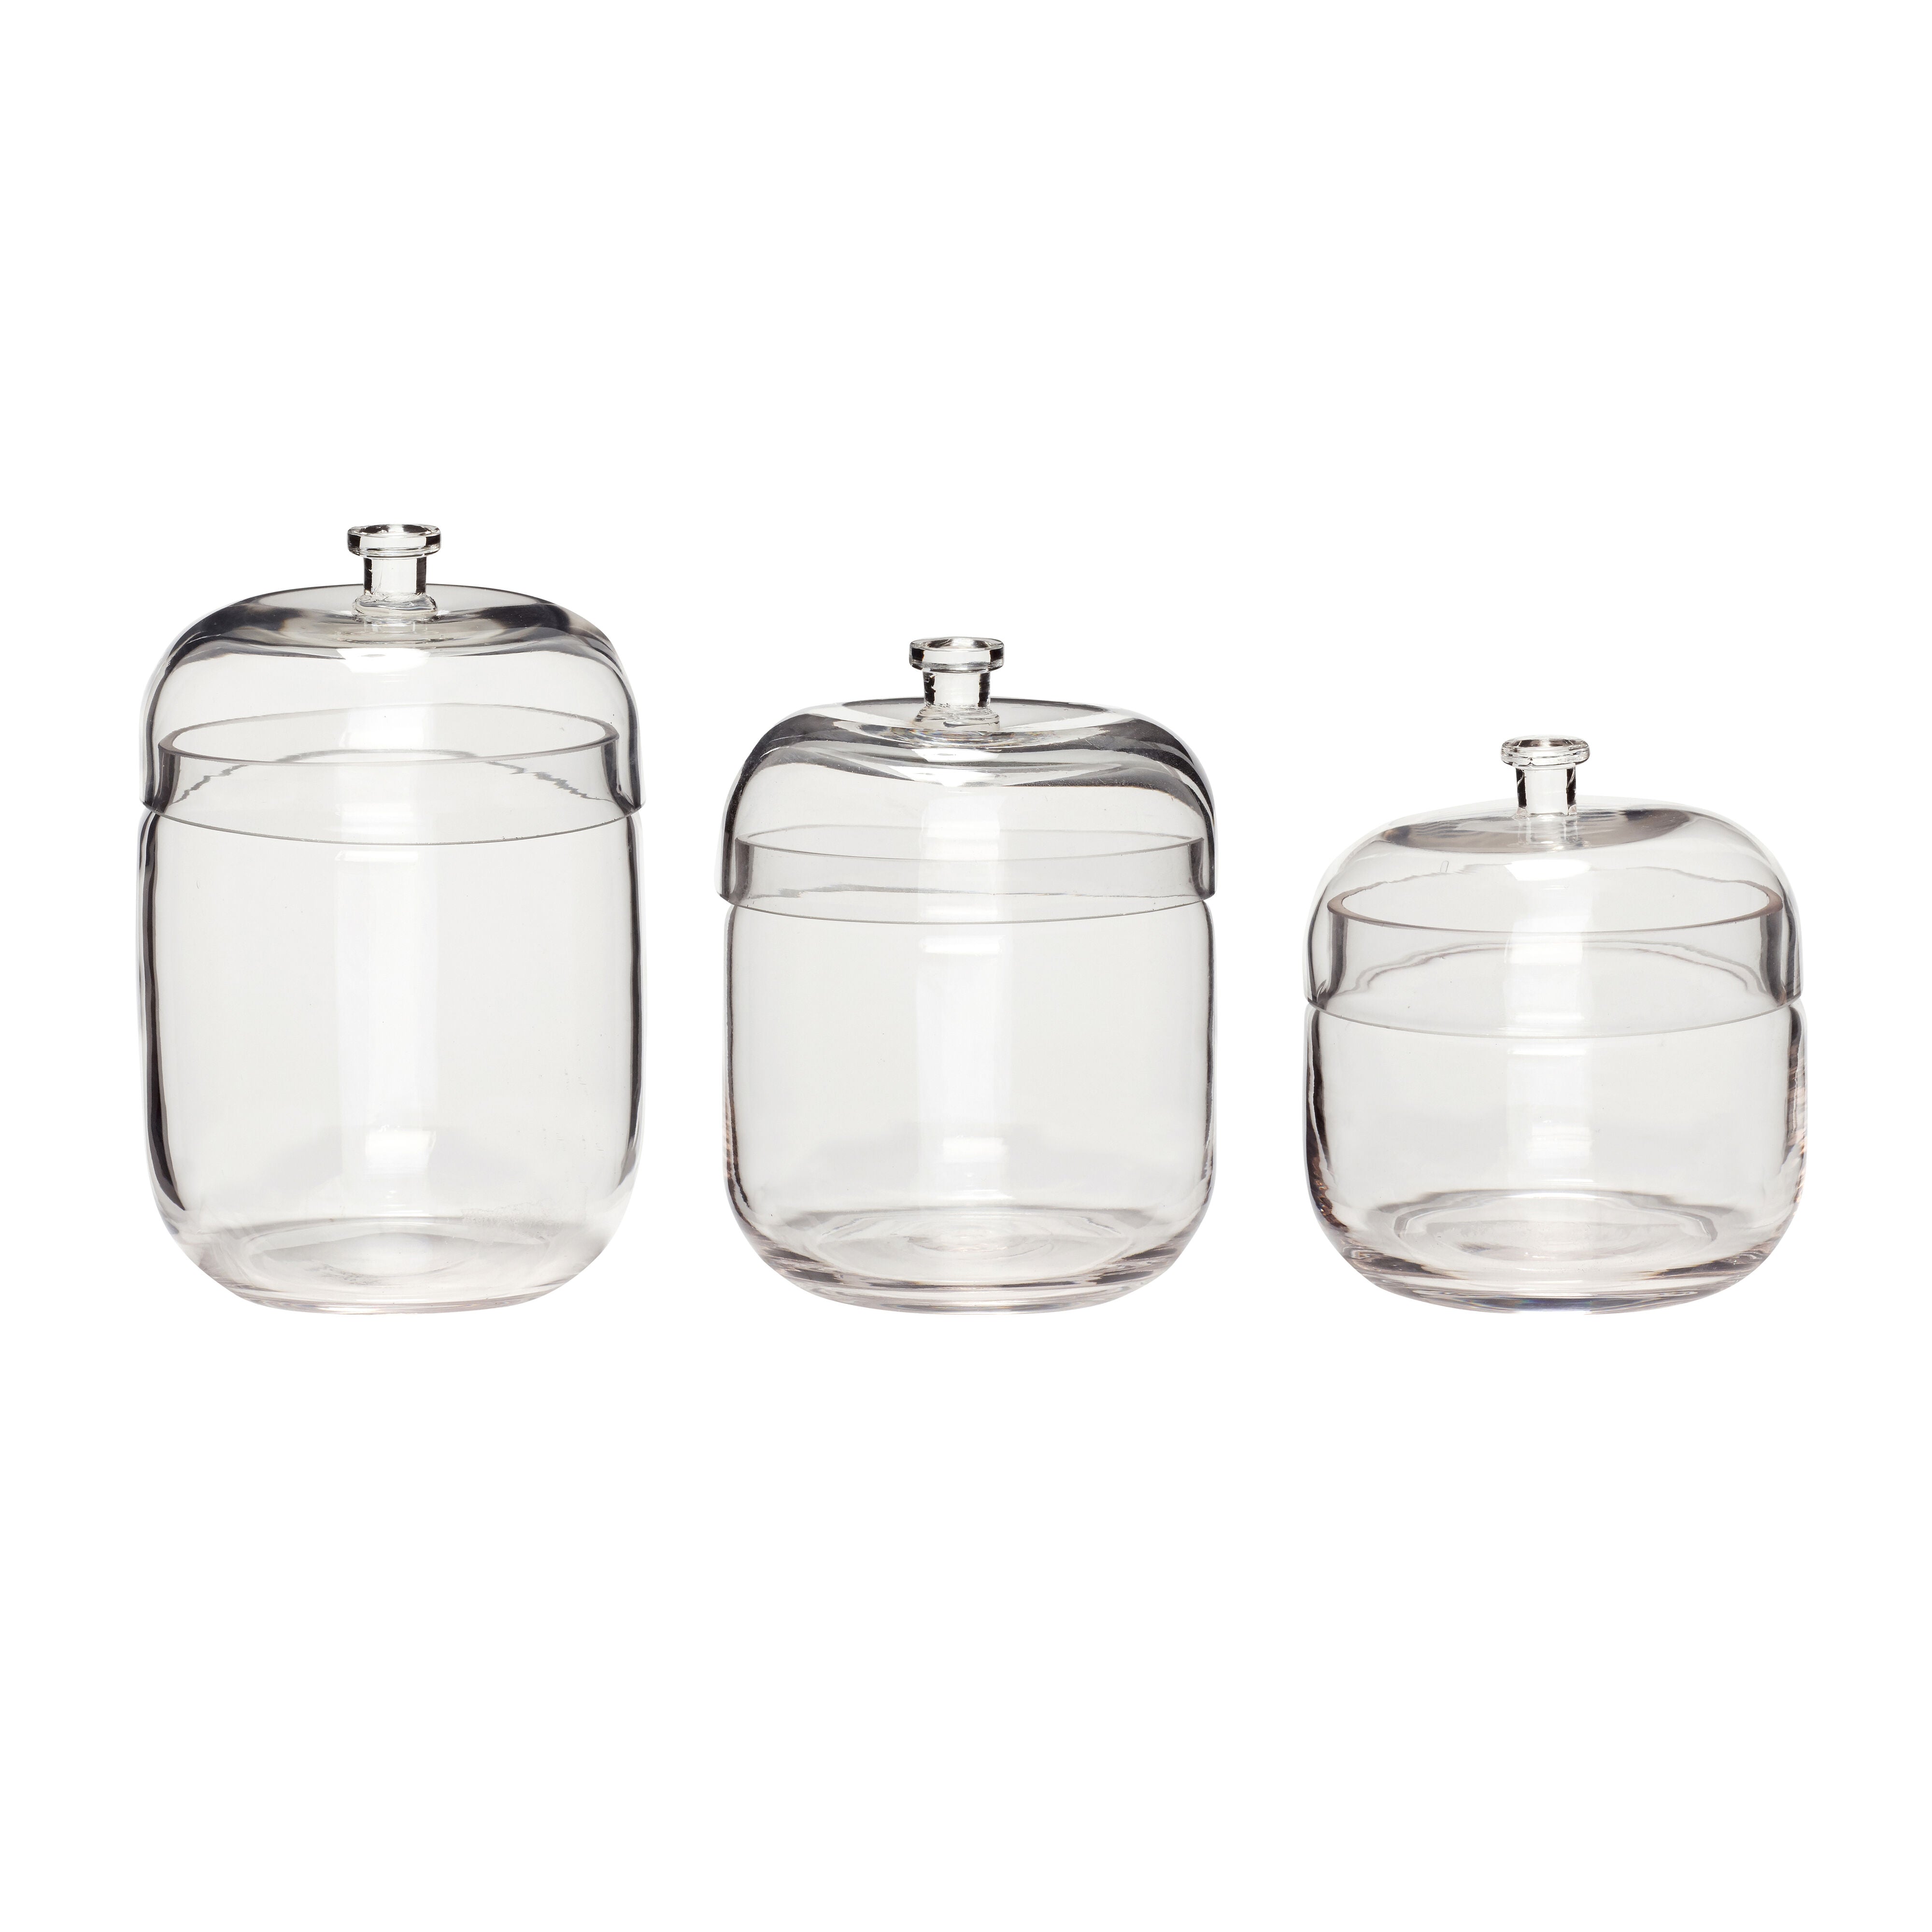 Fill Storage Jars Clear Small